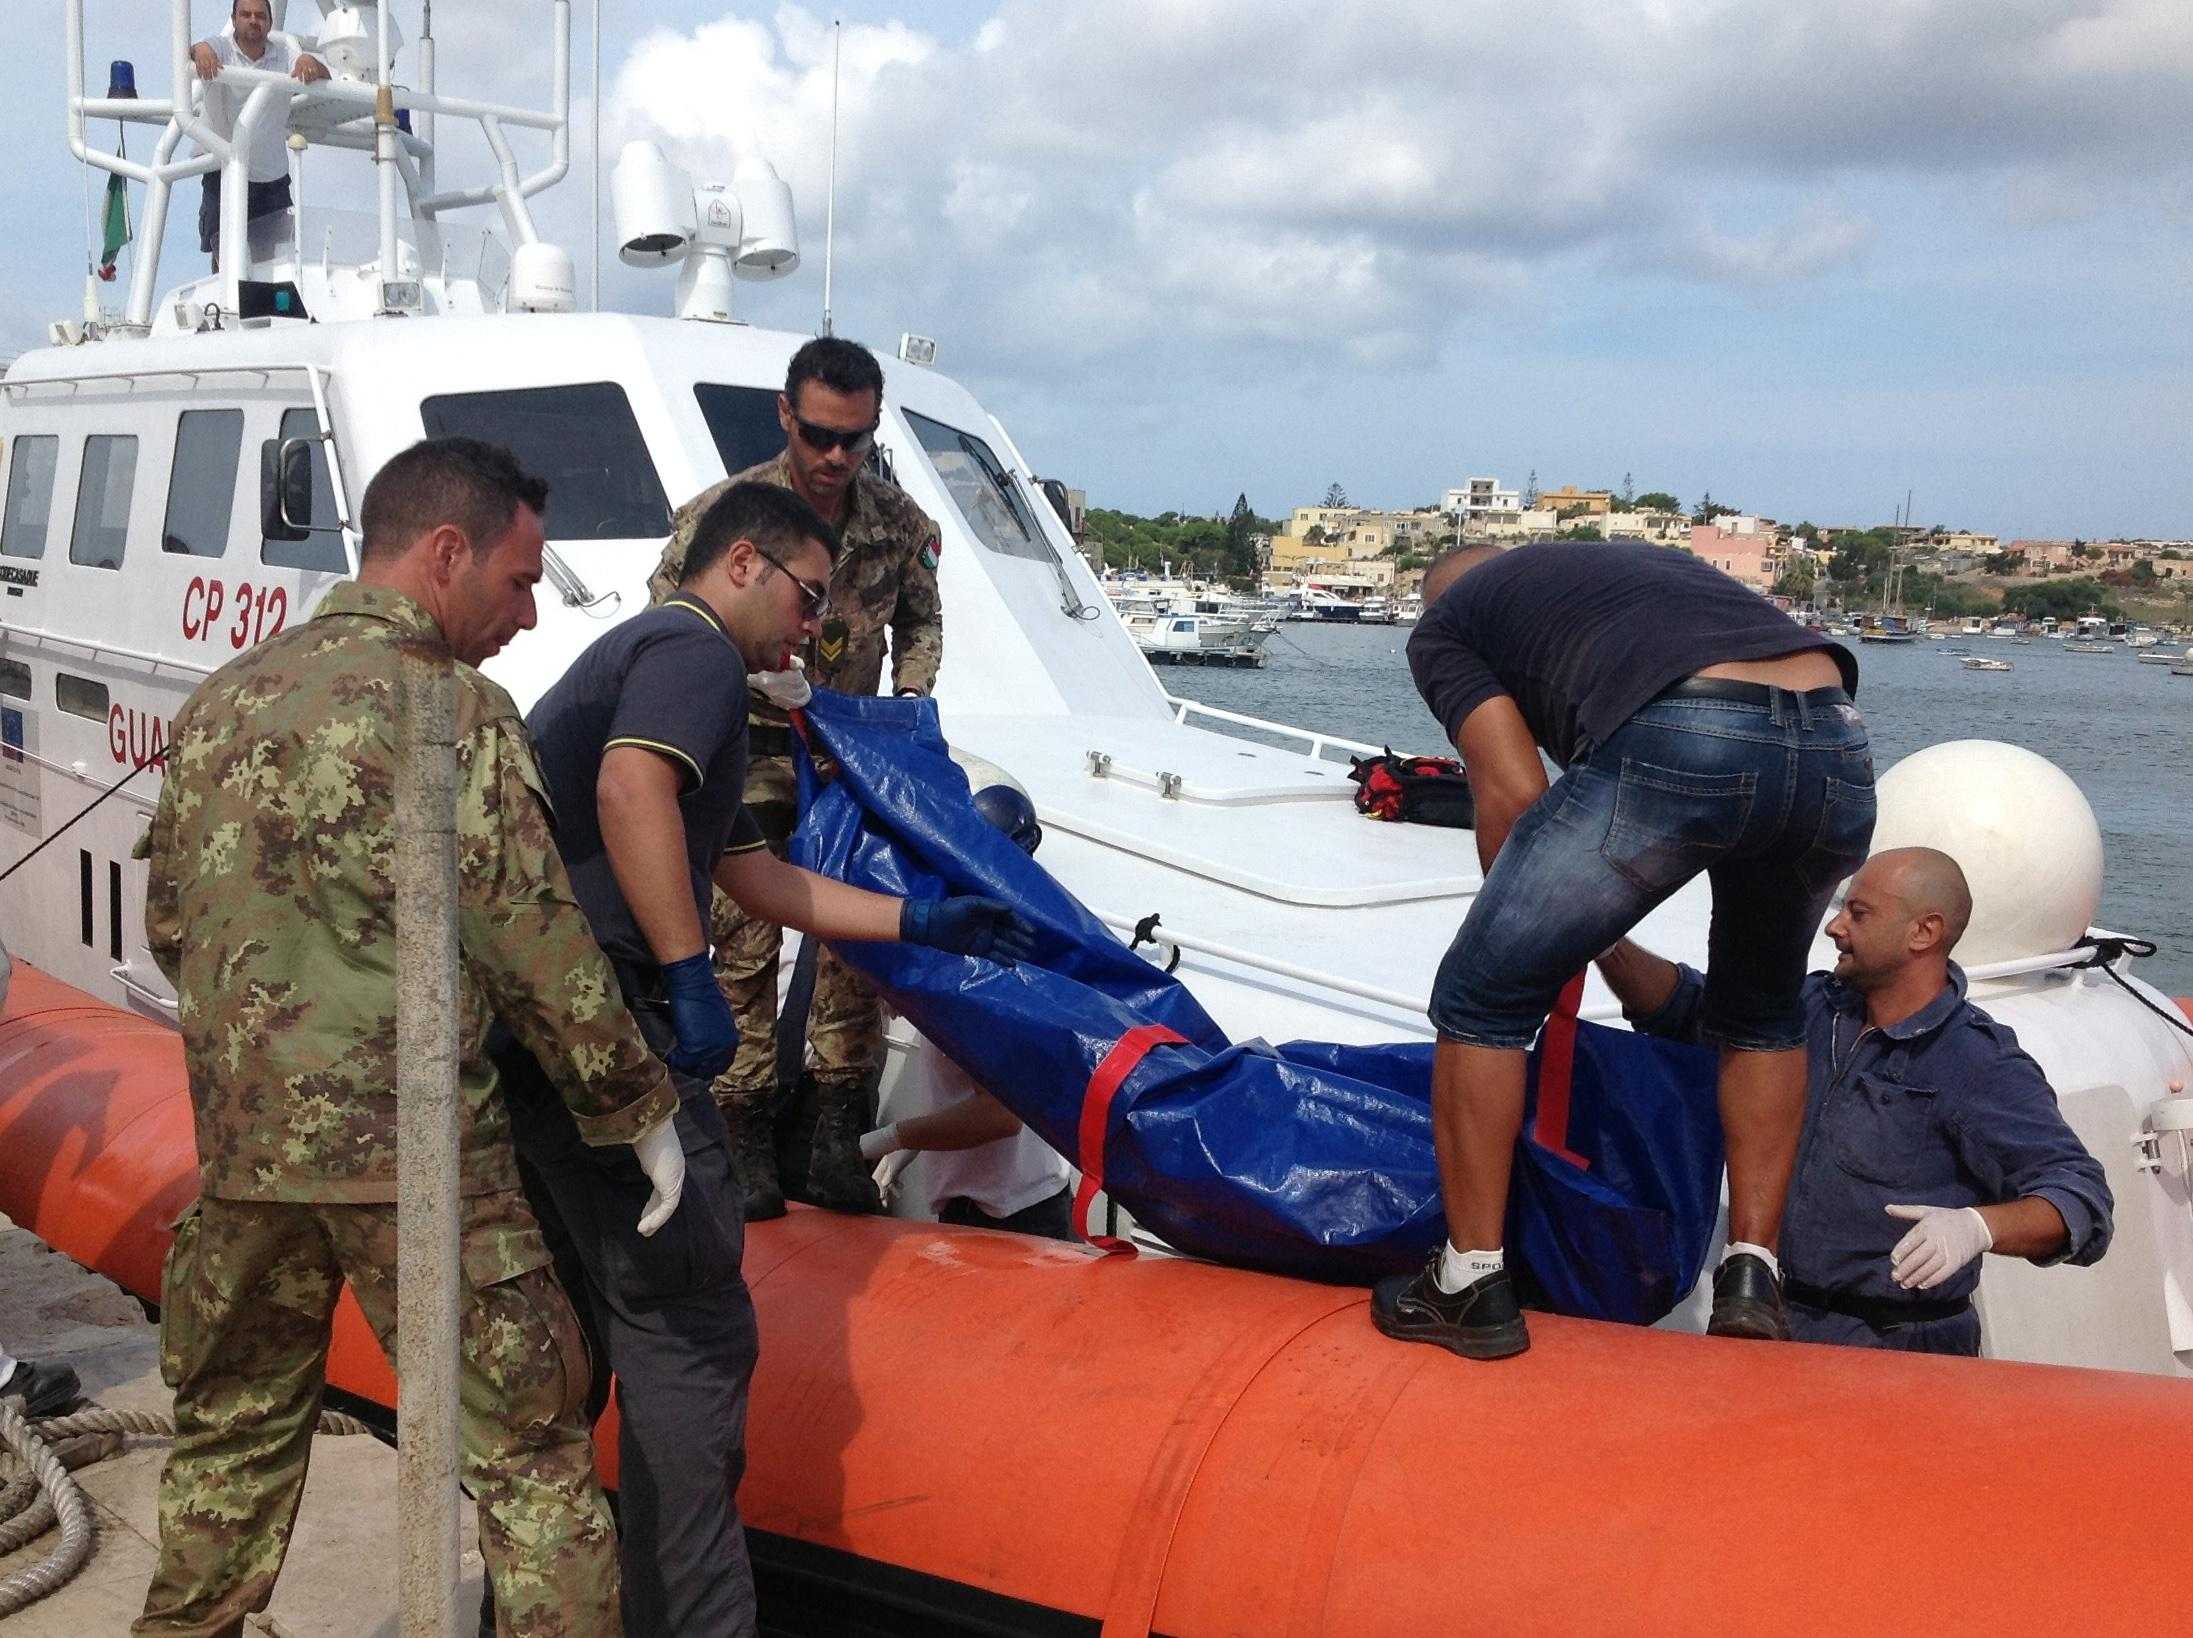 Ancora sei morti in mare. Un peschereccio di migranti è naufragato a sud di Lampedusa